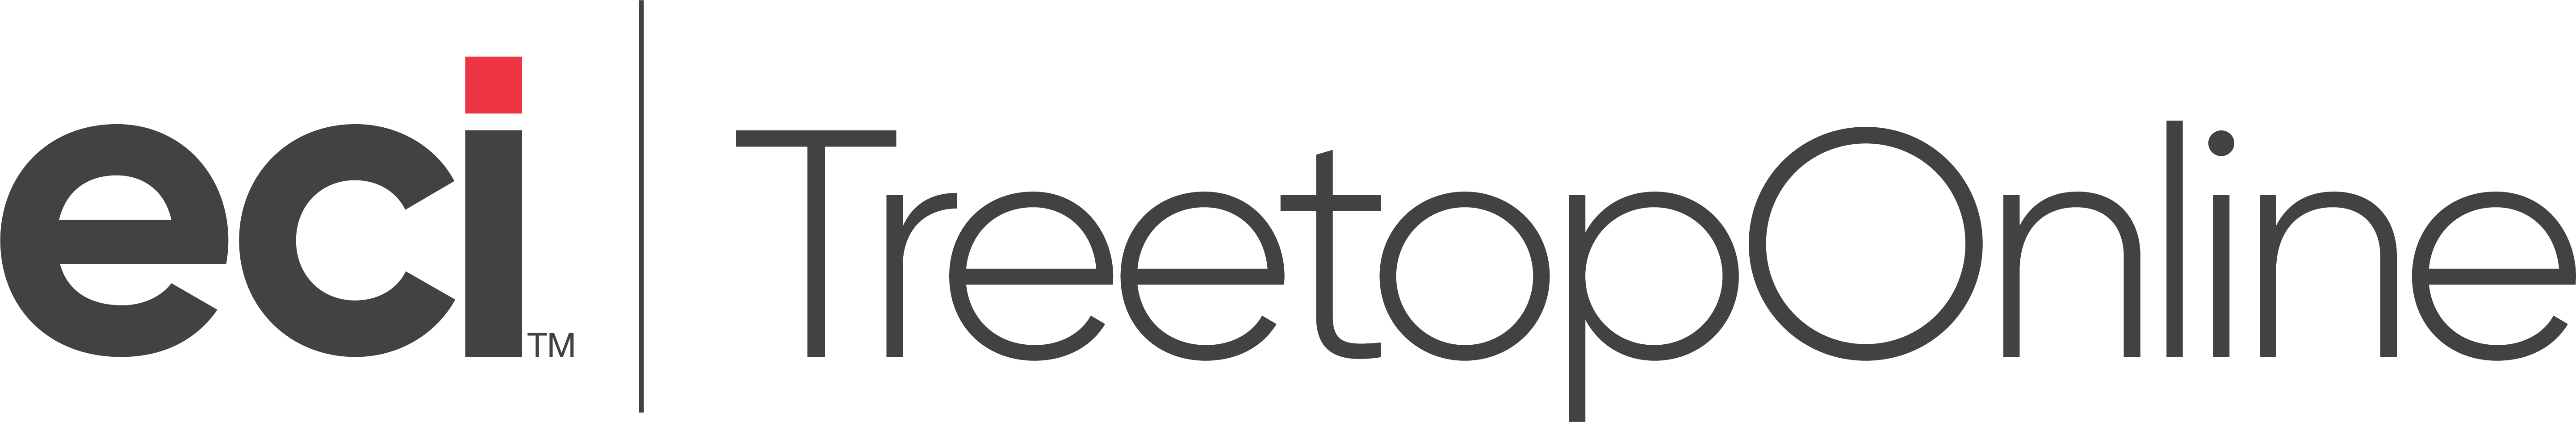 ECI TreetopOnline Logo (1)